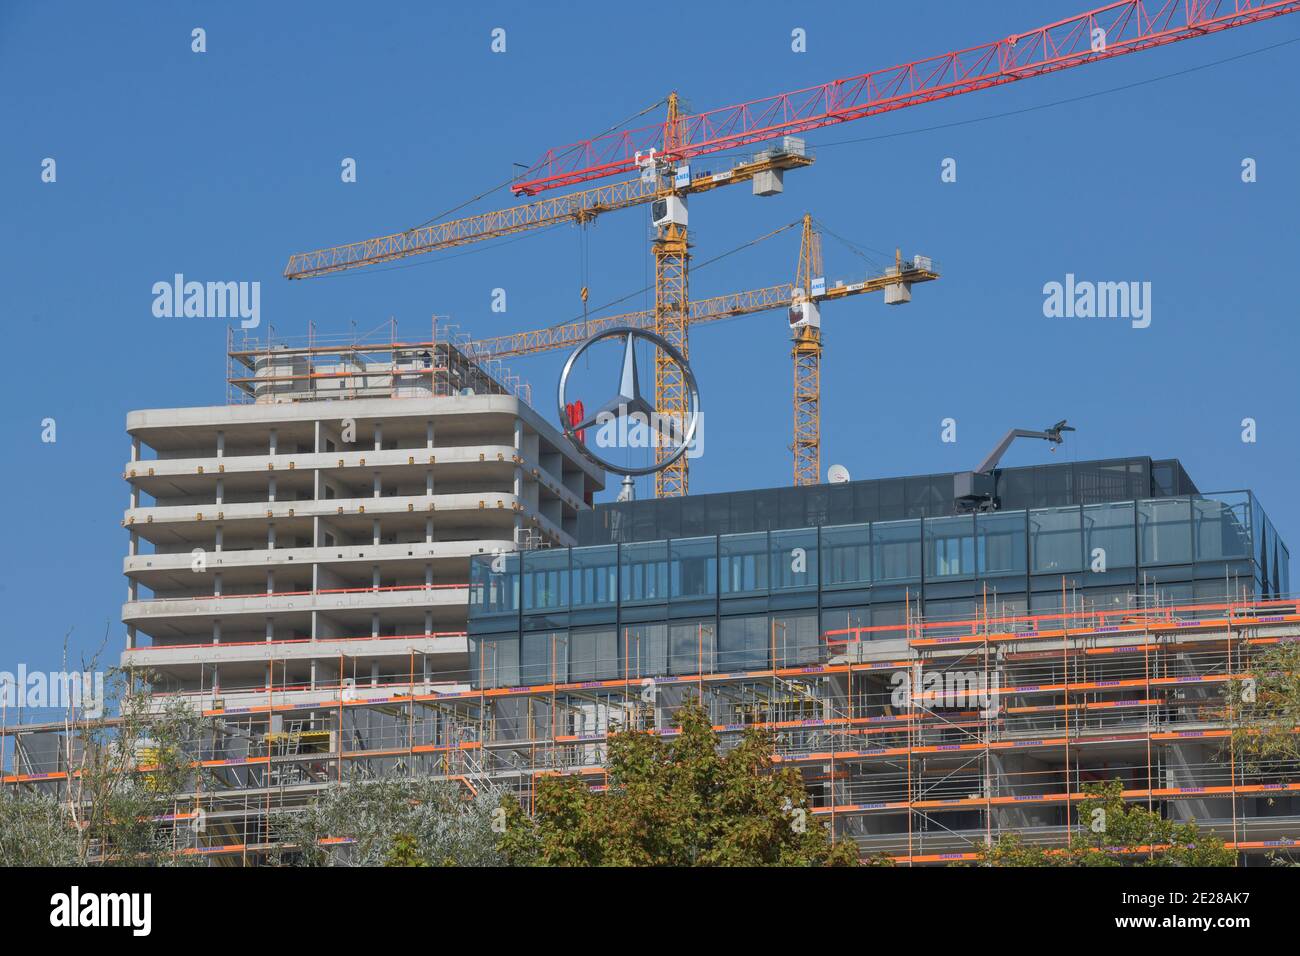 Baustelle, Bürohaus, Mercedes Benz Vertriebszentrale, Mühlenstraße, Friedrichshain, Berlin, Deutschland Stock Photo